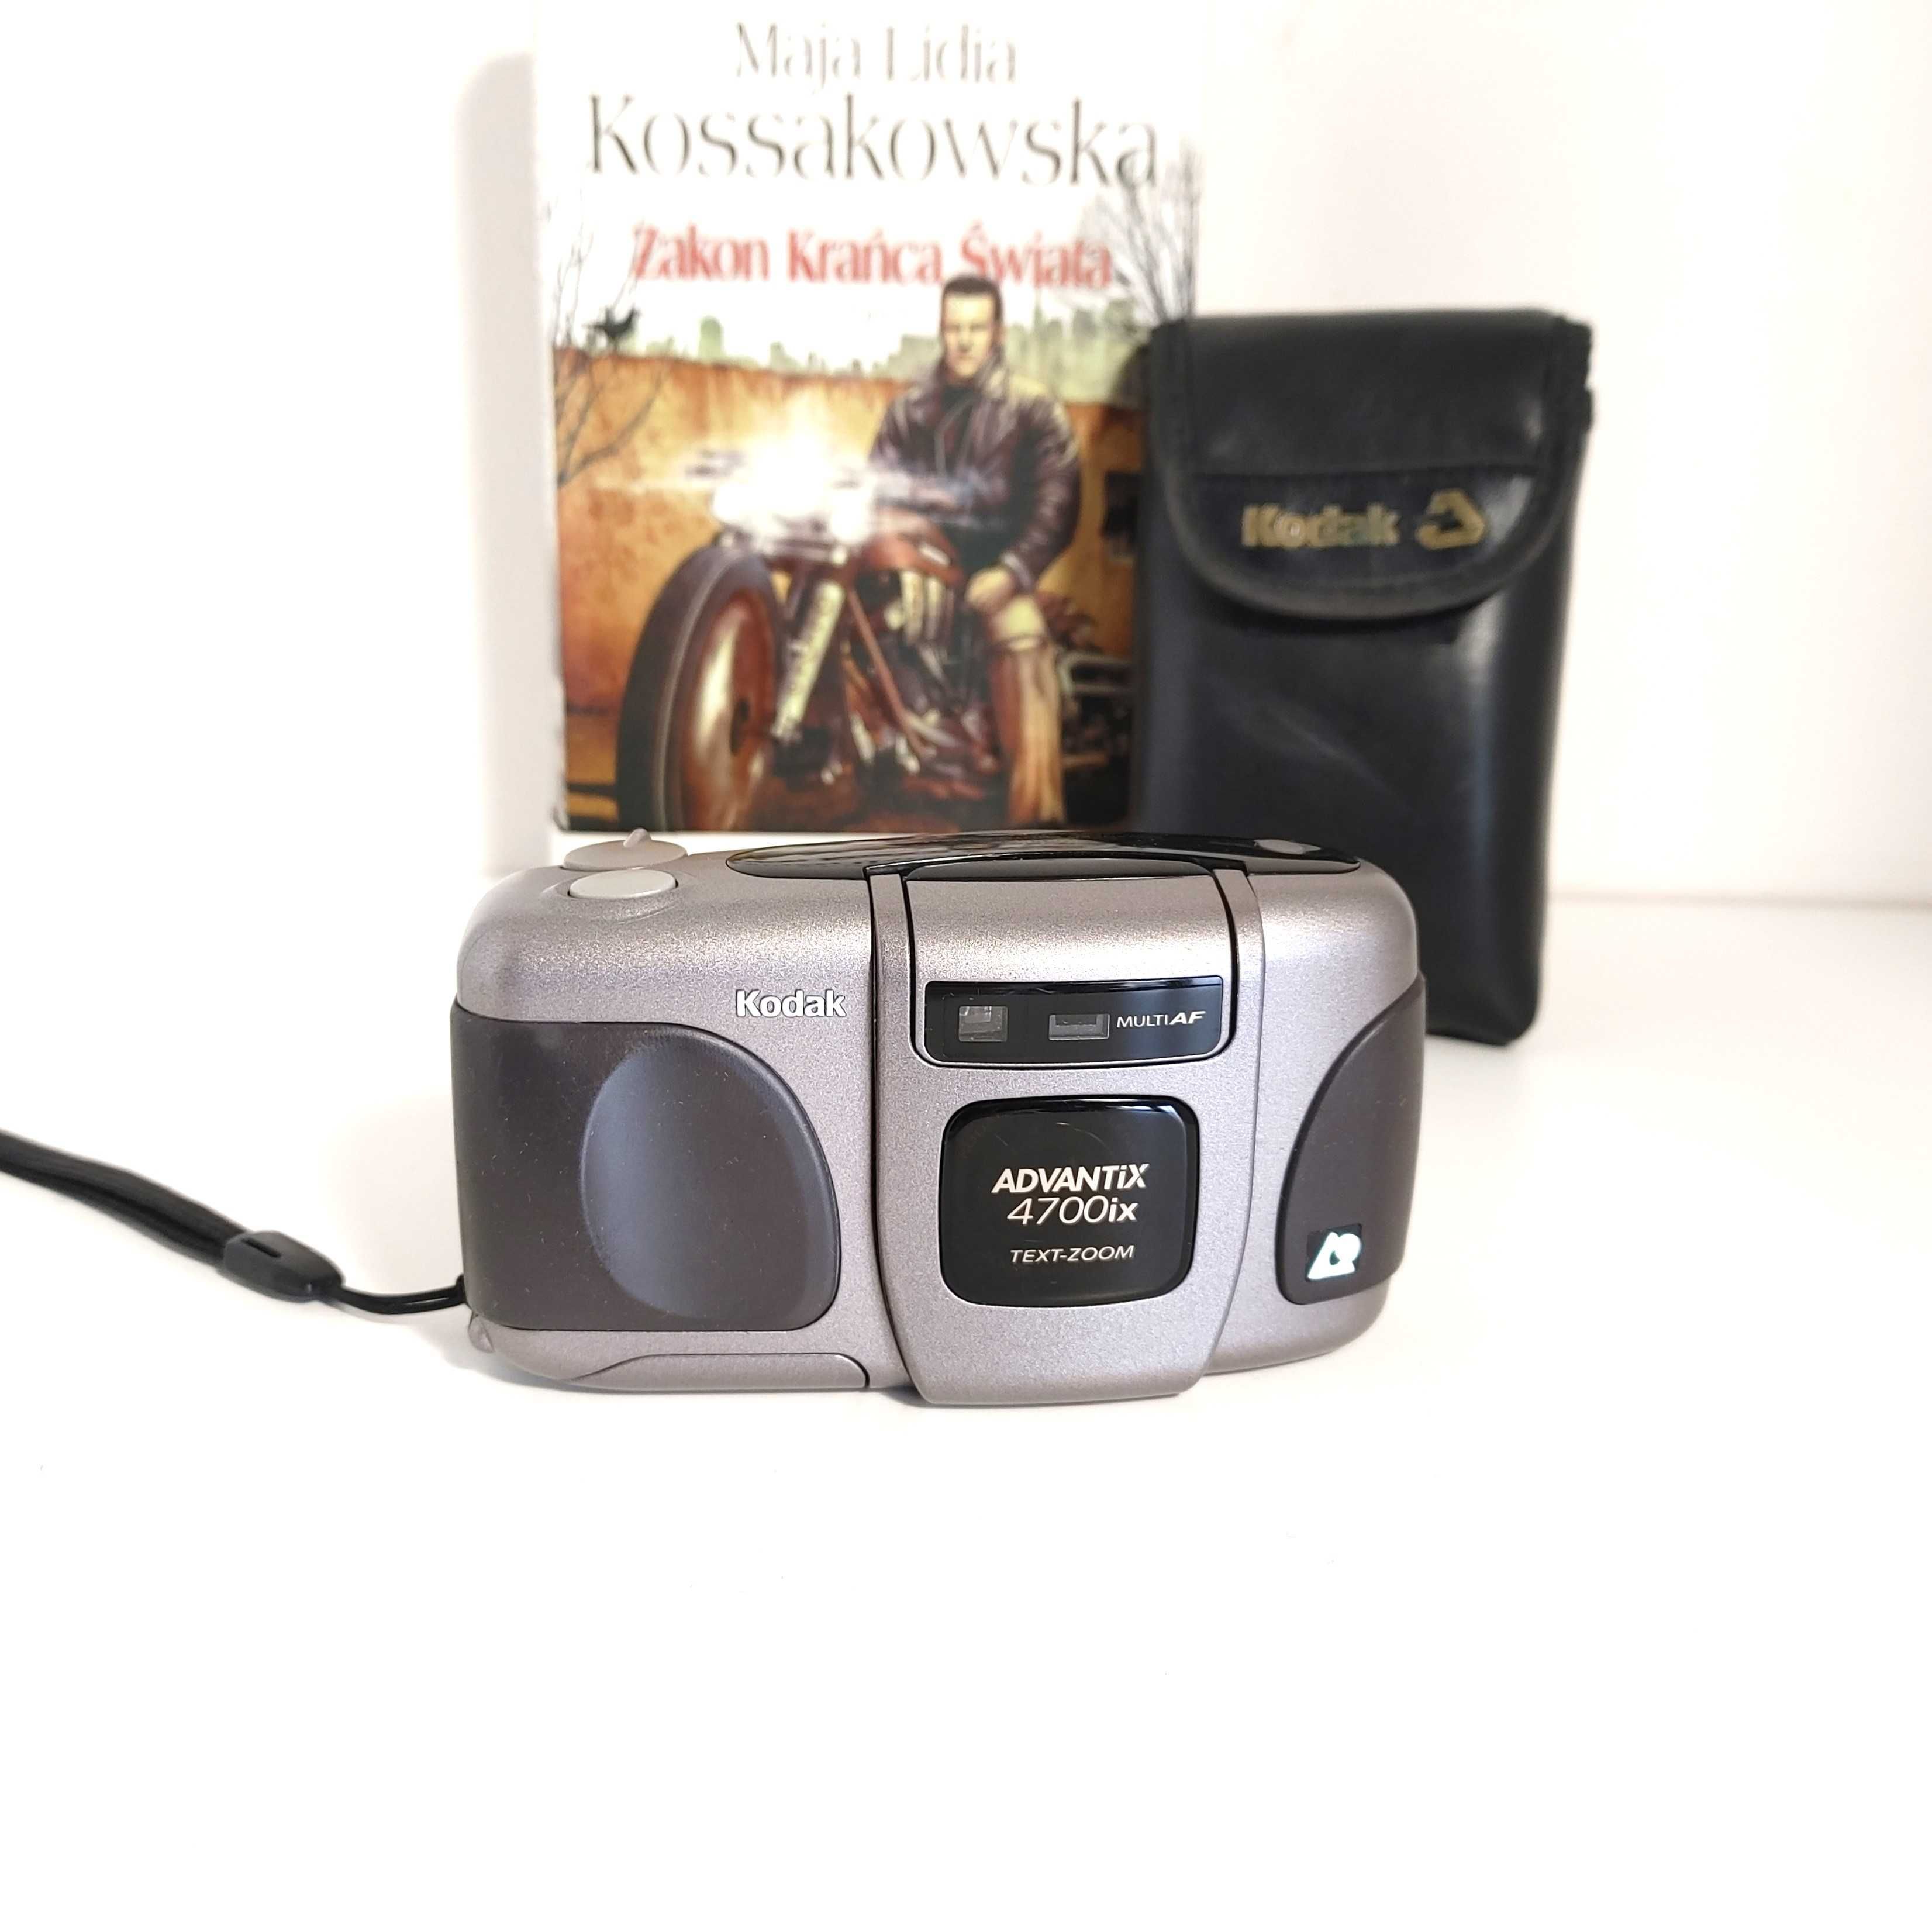 Kompaktowy aparat anakogowy KODAK Advantix 4700ix  APS - wyjątkowy